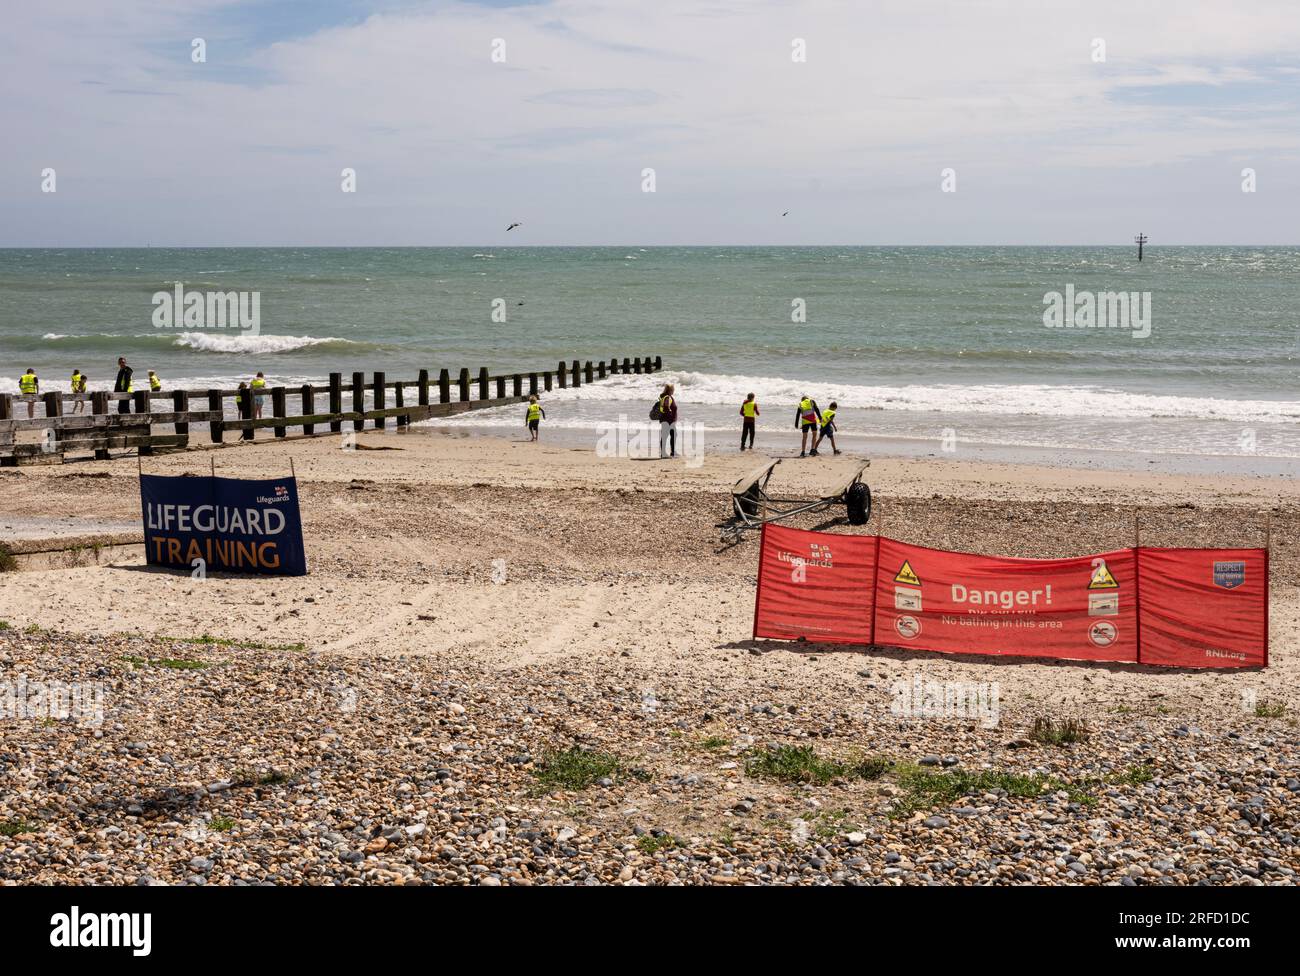 Promenade und Strand in Littlehampton, West Sussex, Großbritannien, im Sommer; Touristen am Strand in der Sonne, Windschutz und Rettungsschwimmer-Schild Stockfoto